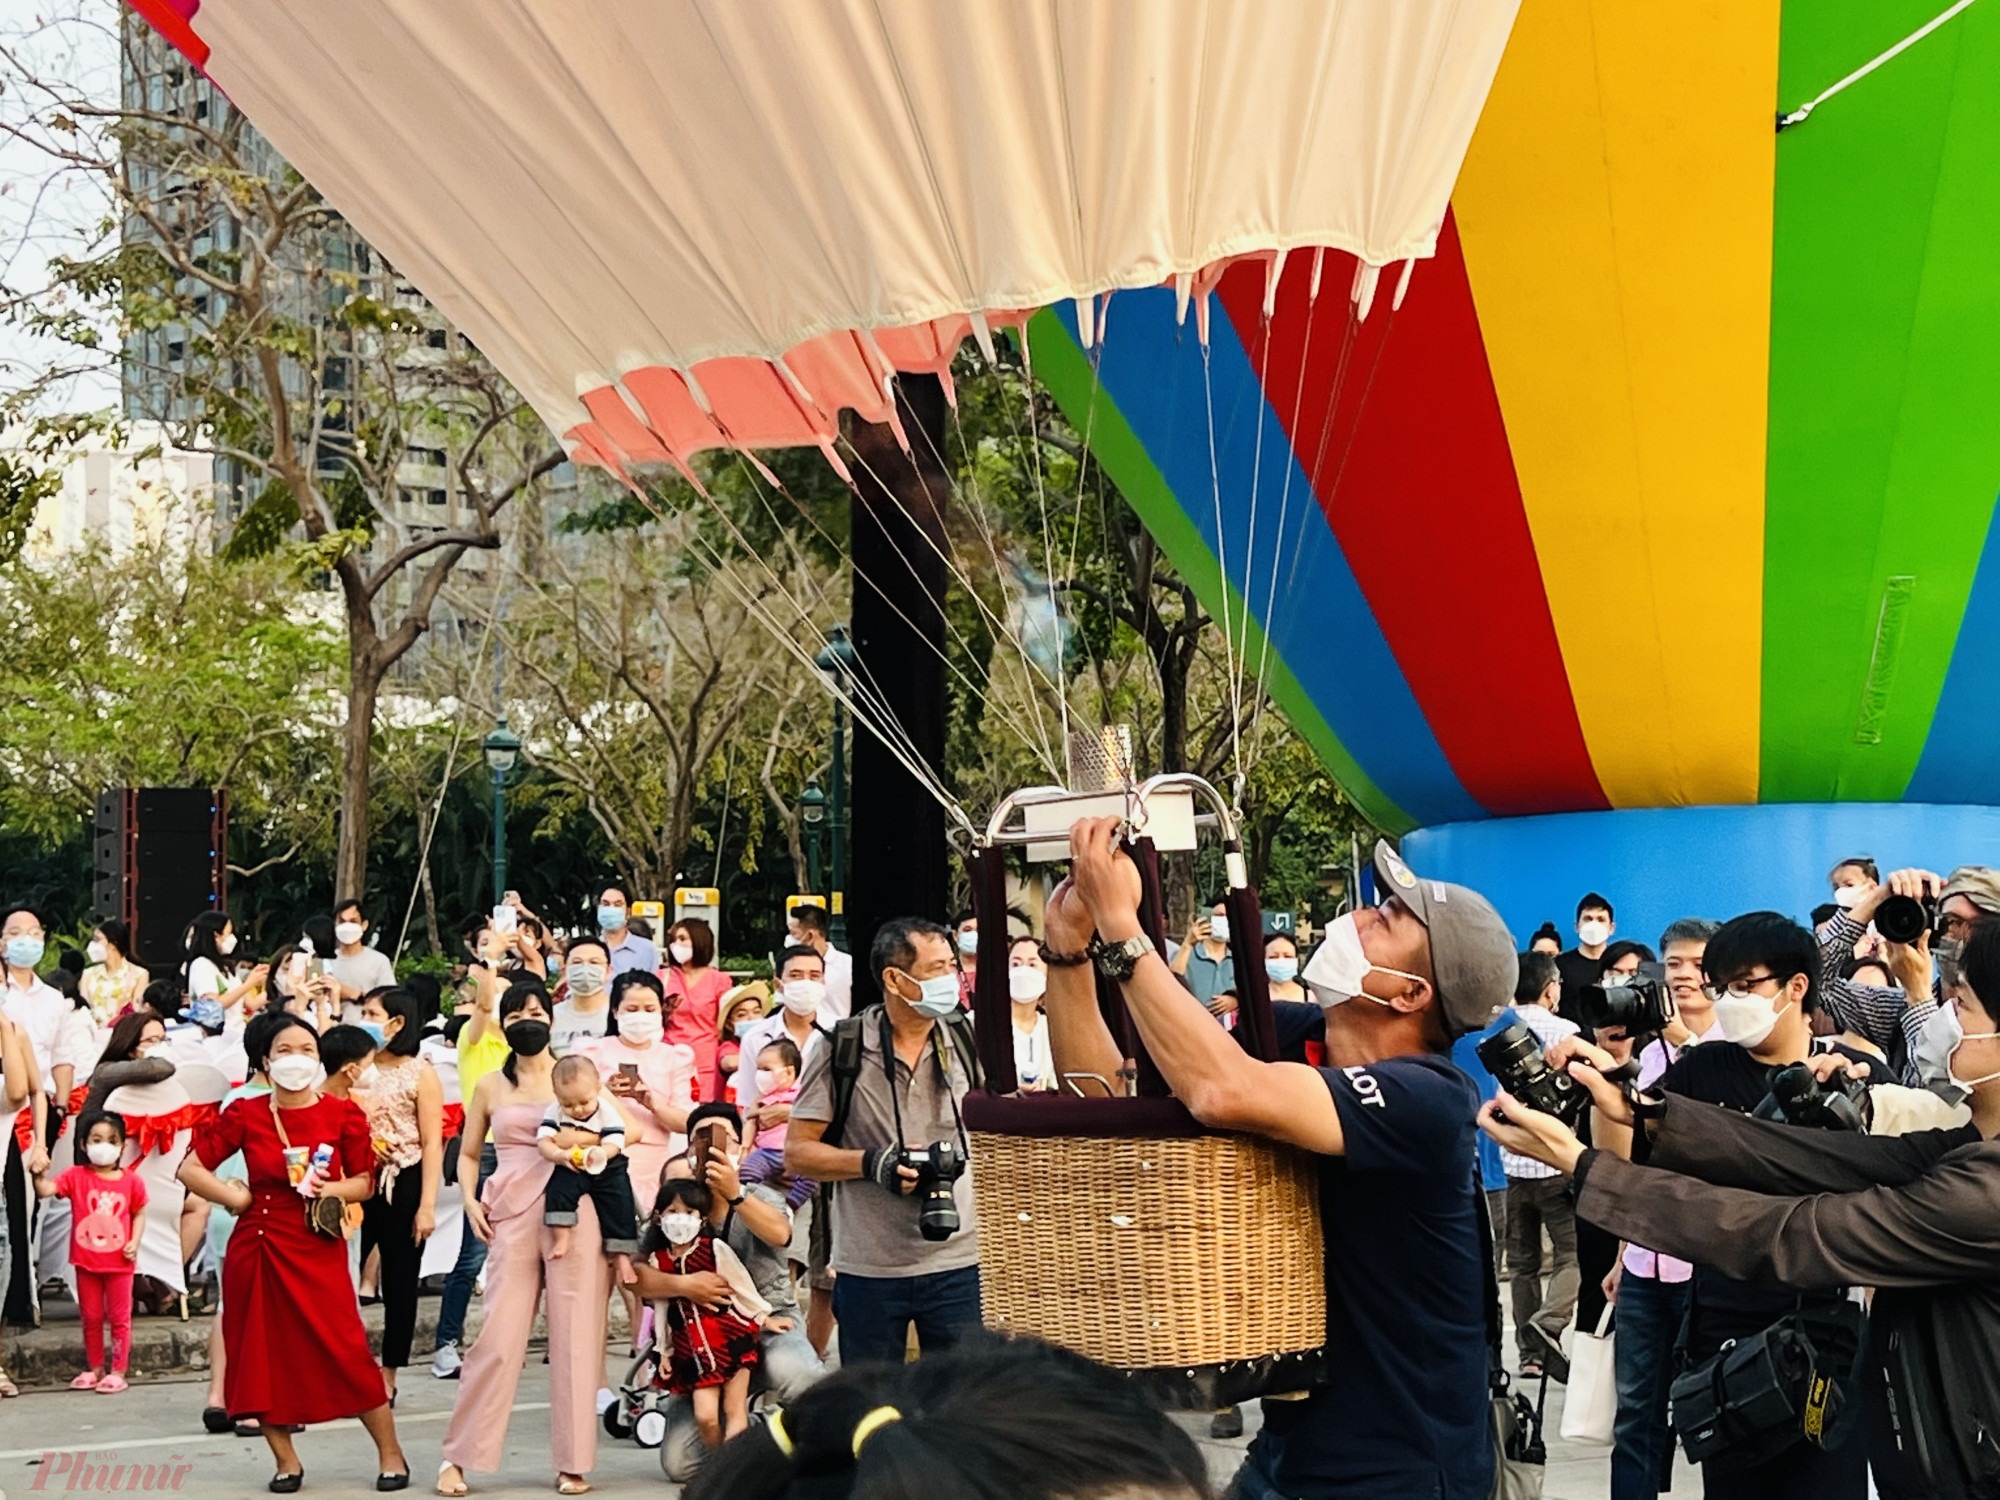 Đến sự kiện trong buổi chiều nay, từ 16h30 du khách sẽ được xem nghệ thuật biểu diễn khinh khí cầu đến từ các phi công, kỹ thuật viên chuyên nghiệp. Xem diễu hành du thuyền trên sông Sài Gòn, tham gia các trò chơi trả lời câu hỏi để hiểu thêm về địa danh, văn hoá TPHCM. 